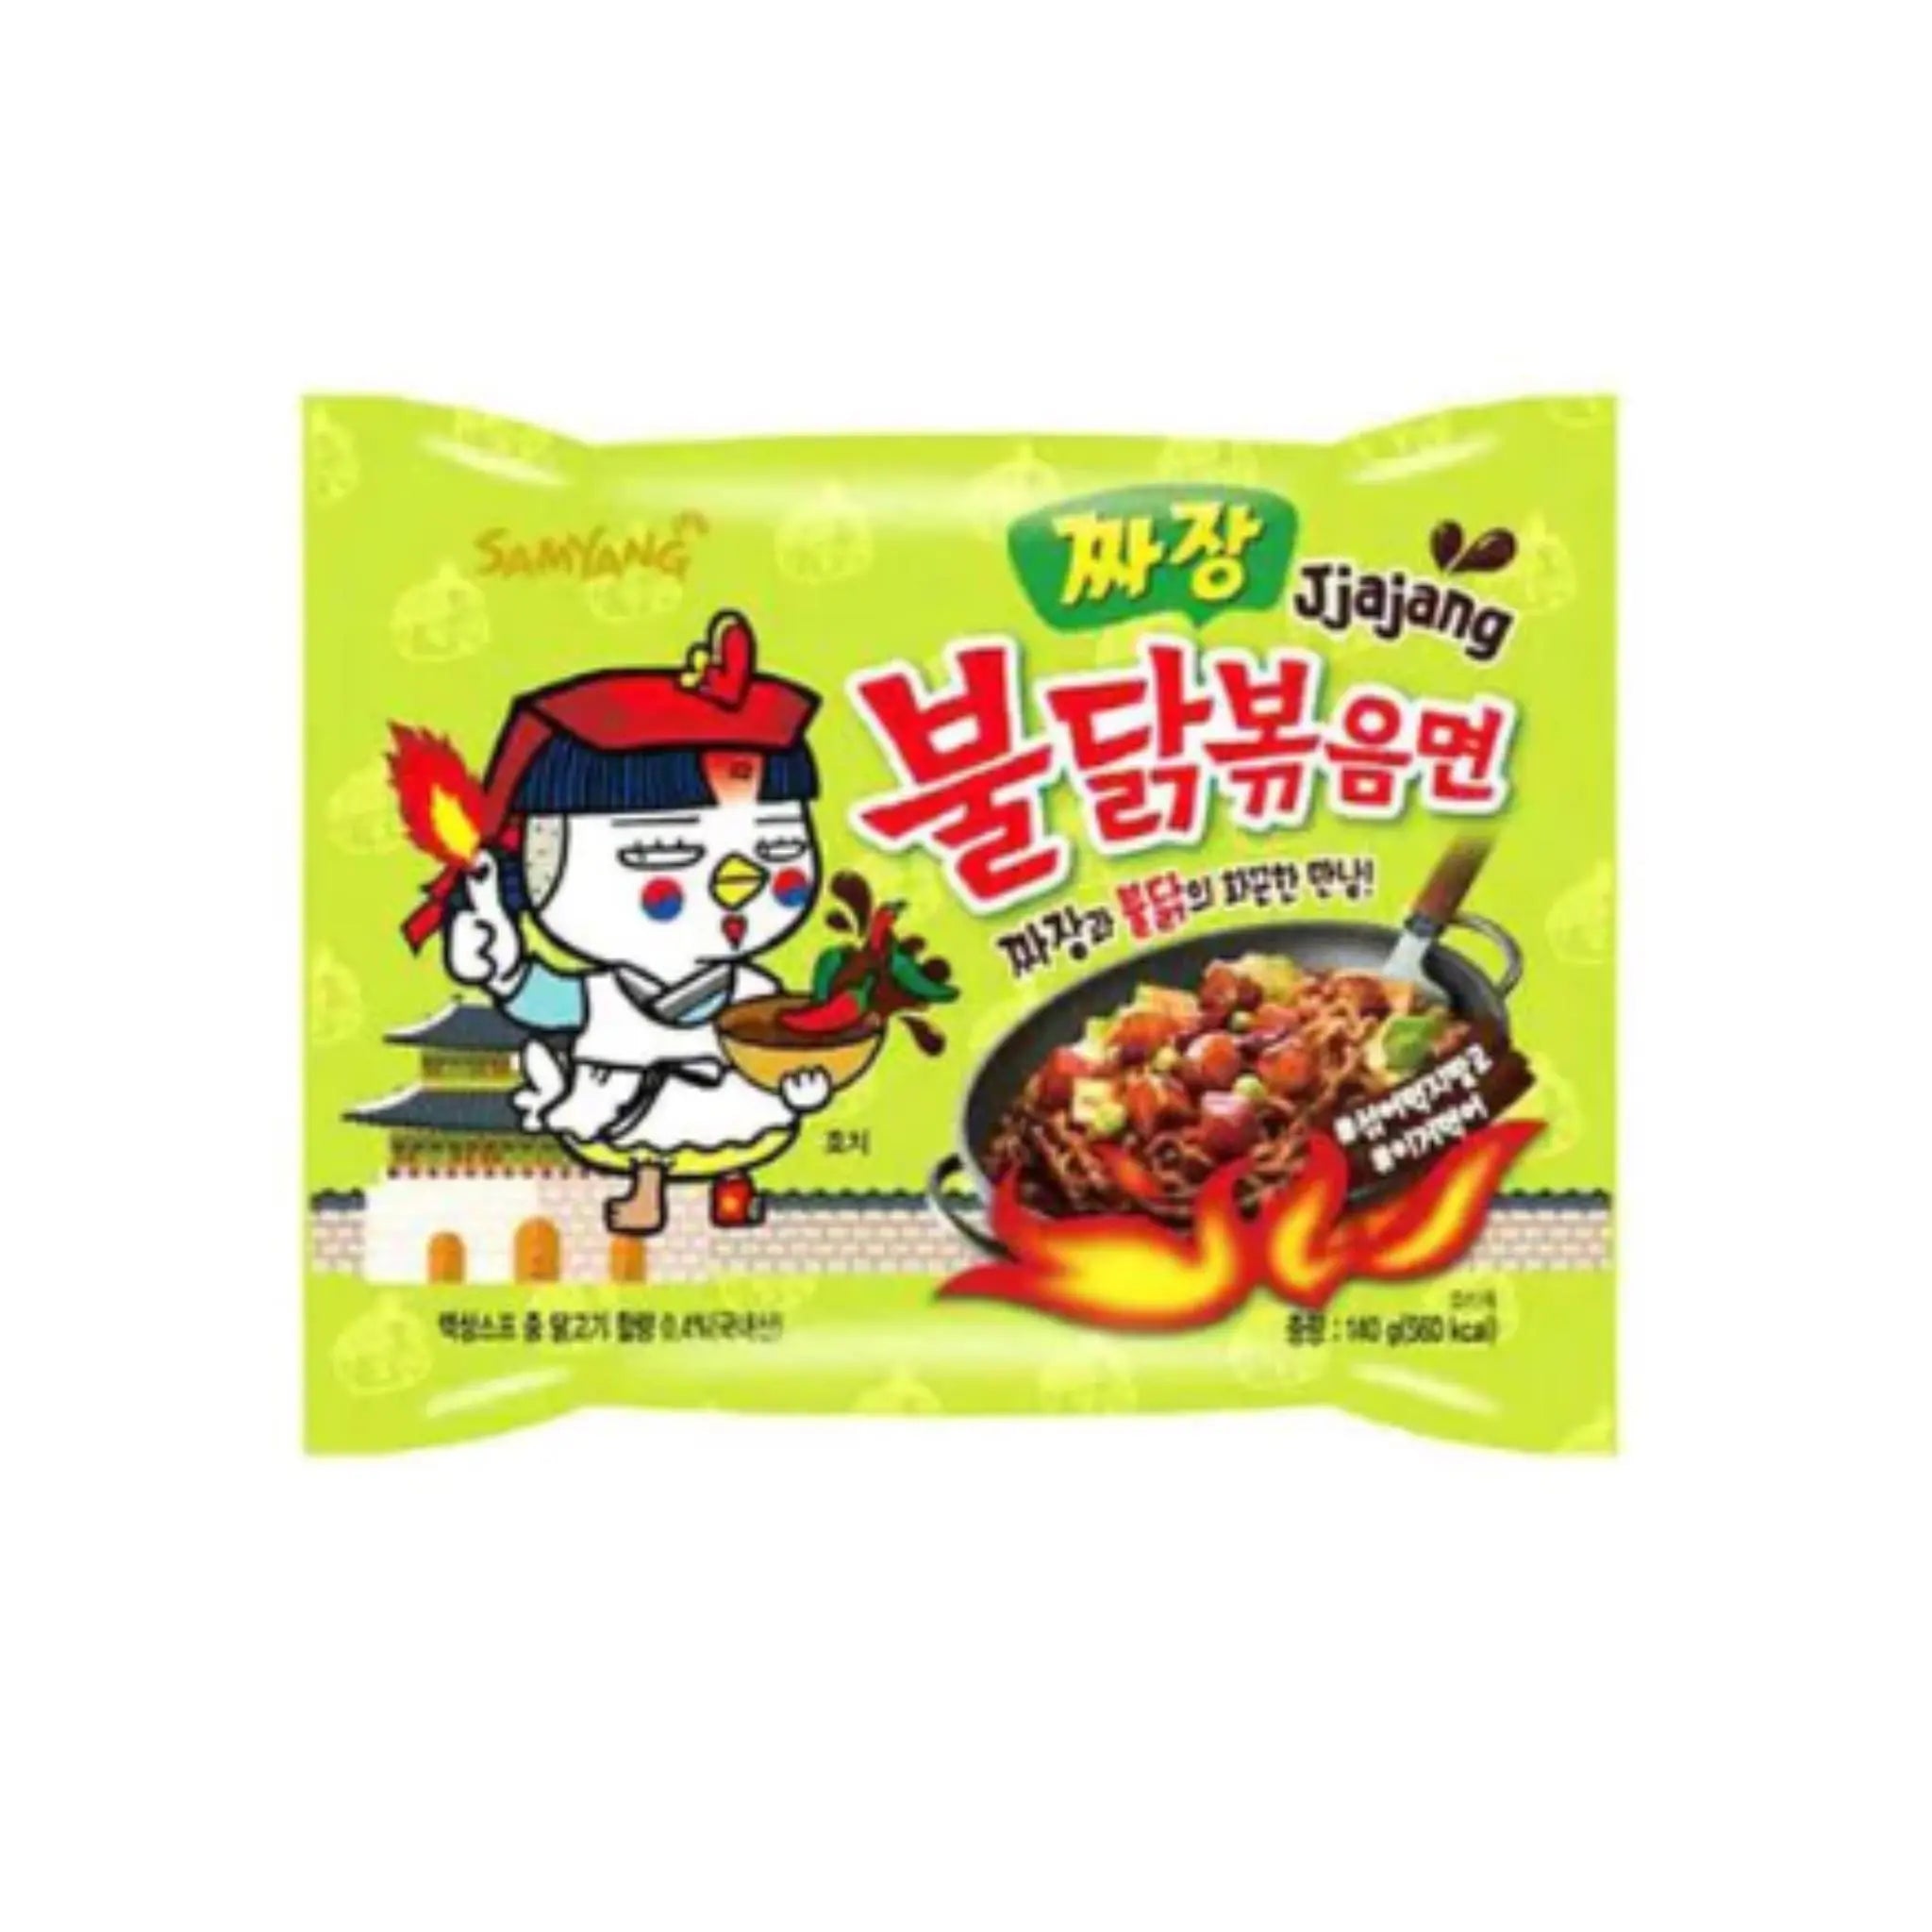 Samyang Jjajang Hot Chicken (140Grx5) Samyang